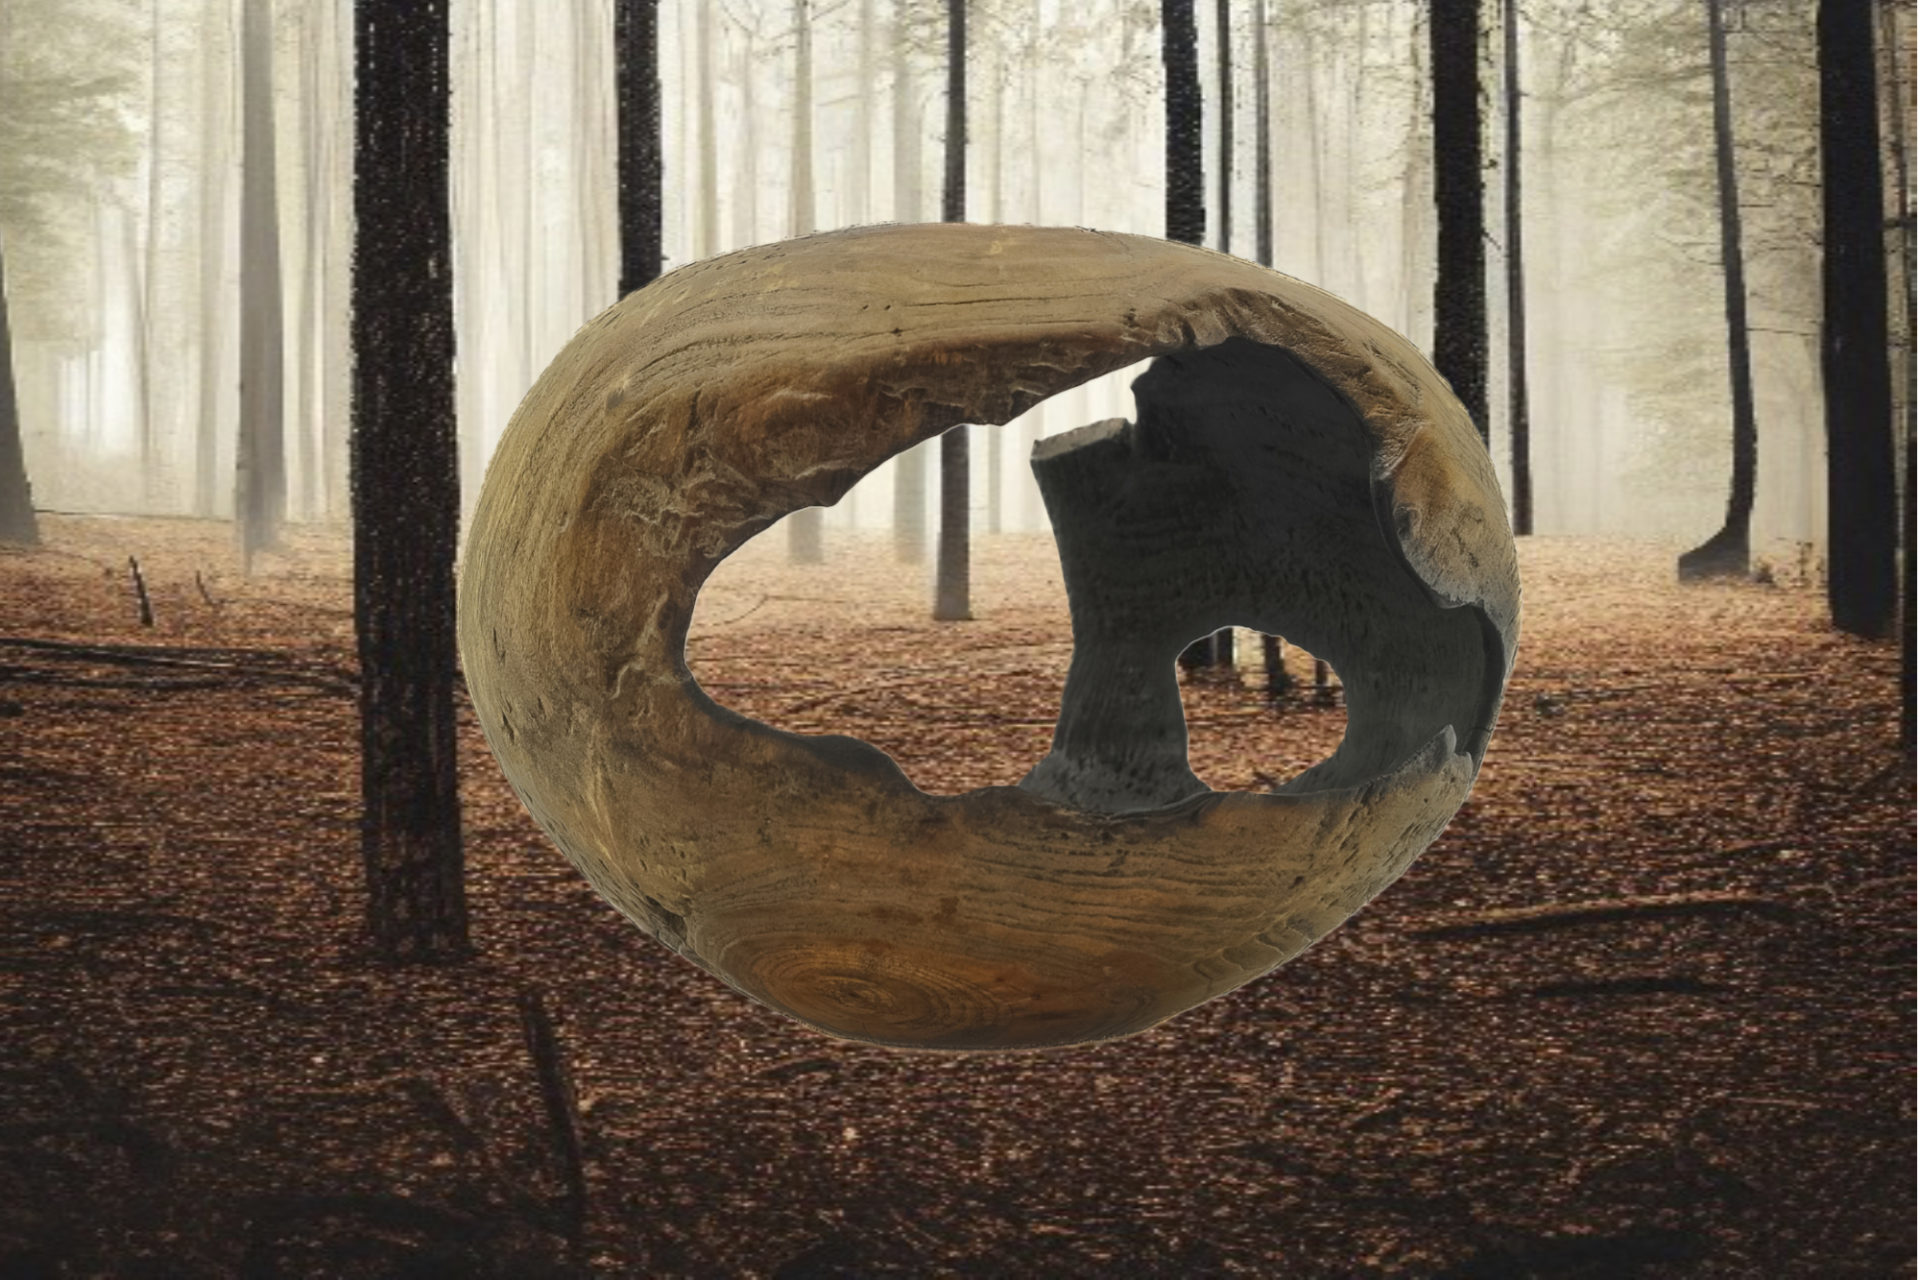 Photo packshot d'une sphère en bois brûlé, située au cœur d'une forêt également touchée par le feu, capturant une atmosphère intense et contemplative.